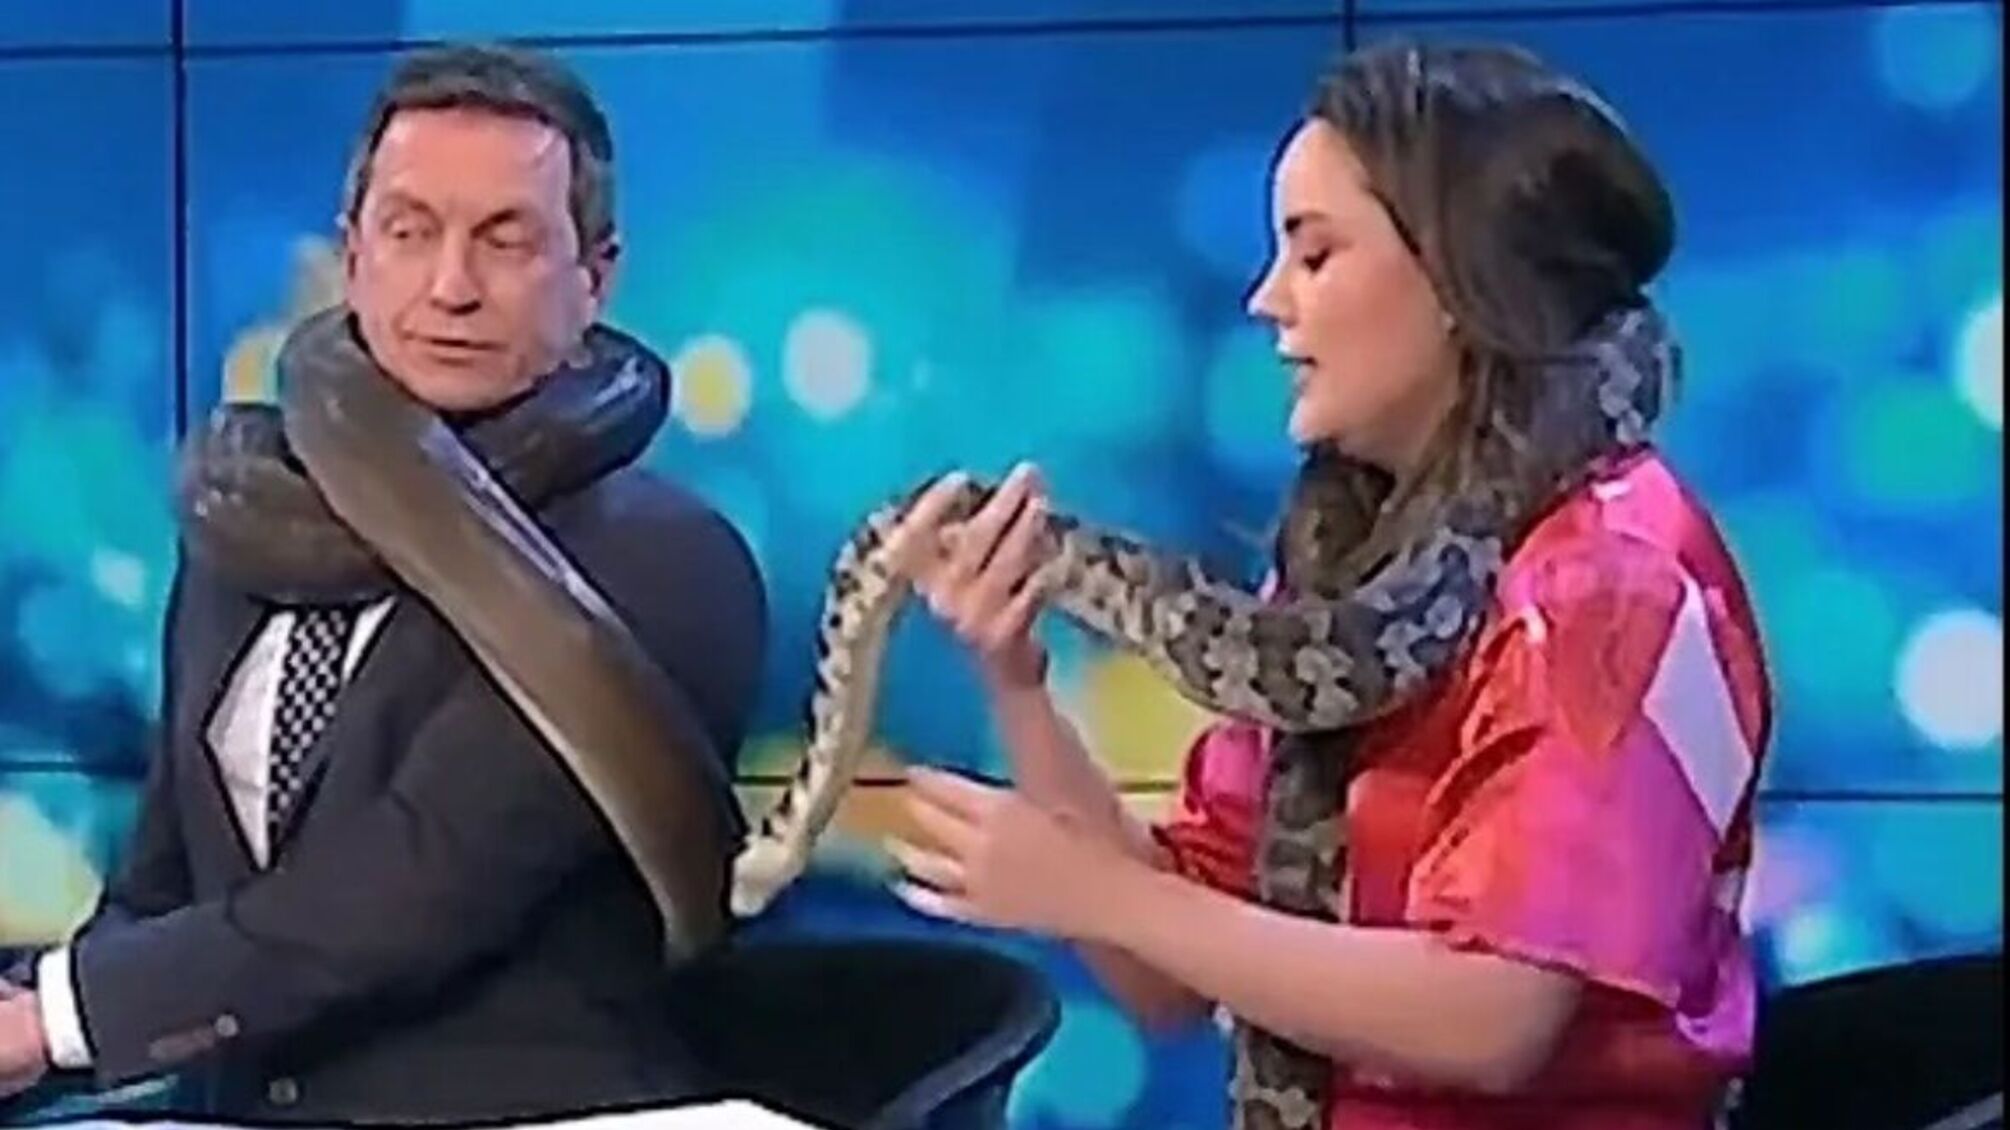 Змія ледве не задушила телезірку Австралії в прямому ефірі (відео)